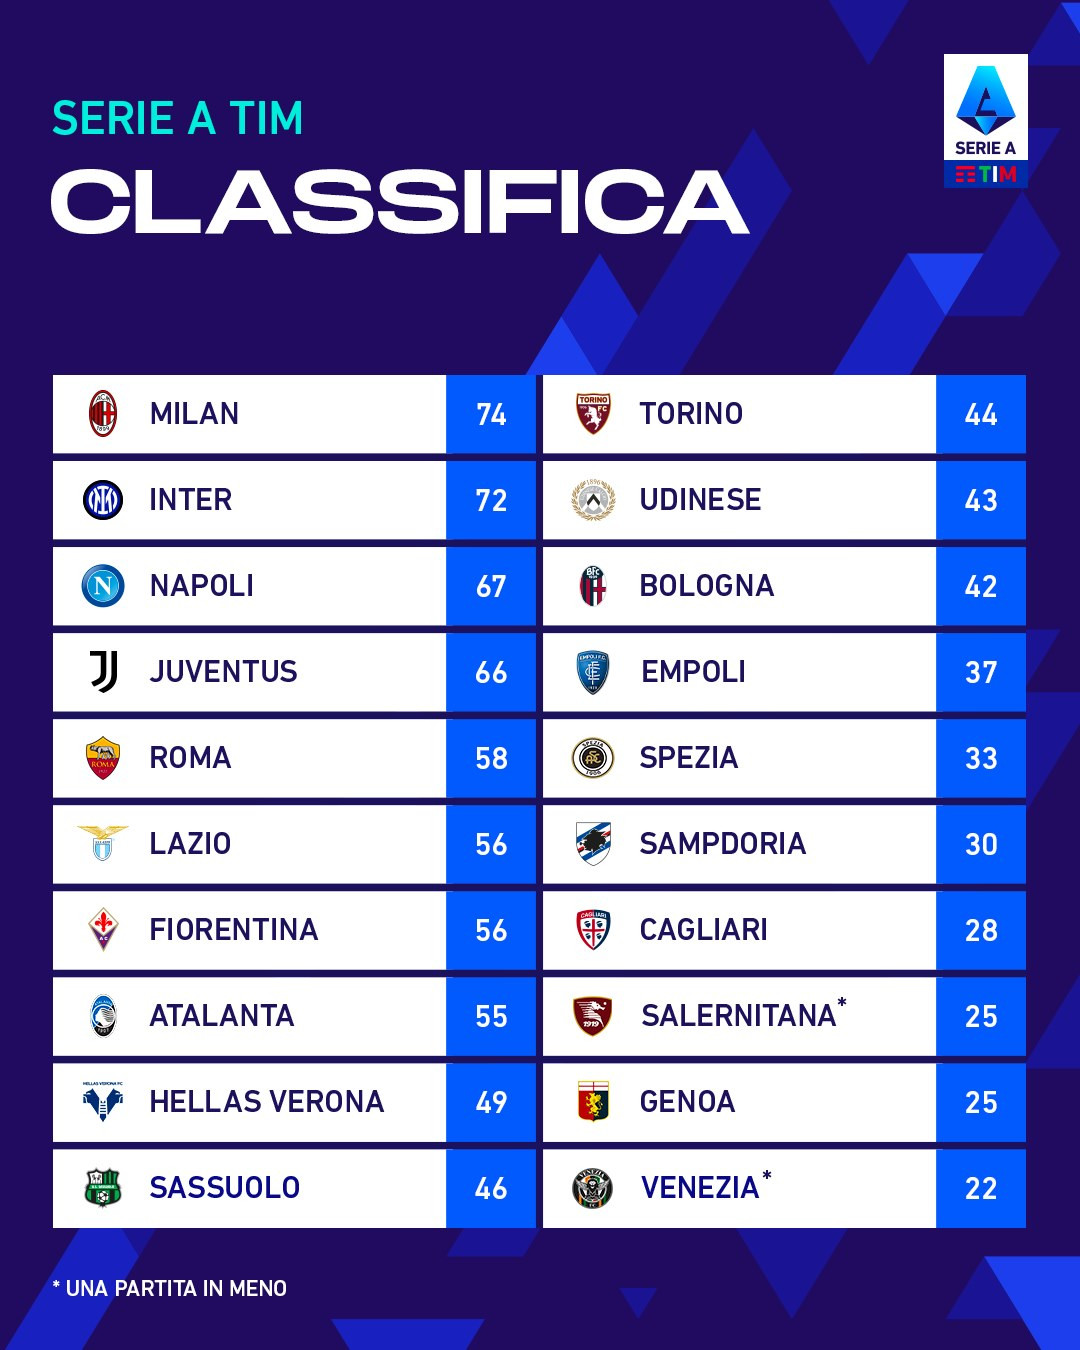 Bảng xếp hạng Serie A sau các trận đấu bù.